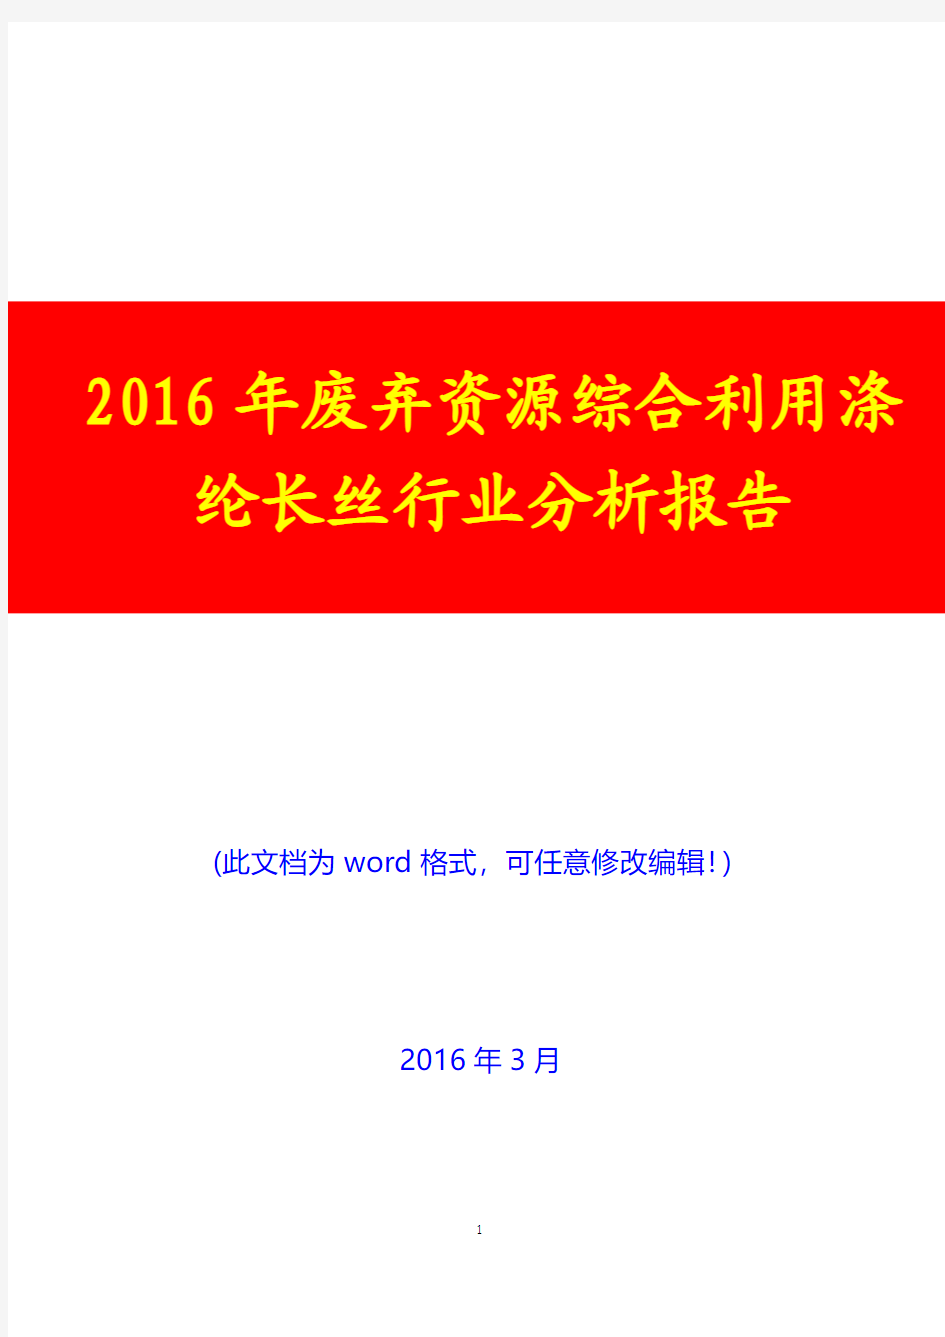 2016年废弃资源综合利用涤纶长丝行业分析报告(经典版)